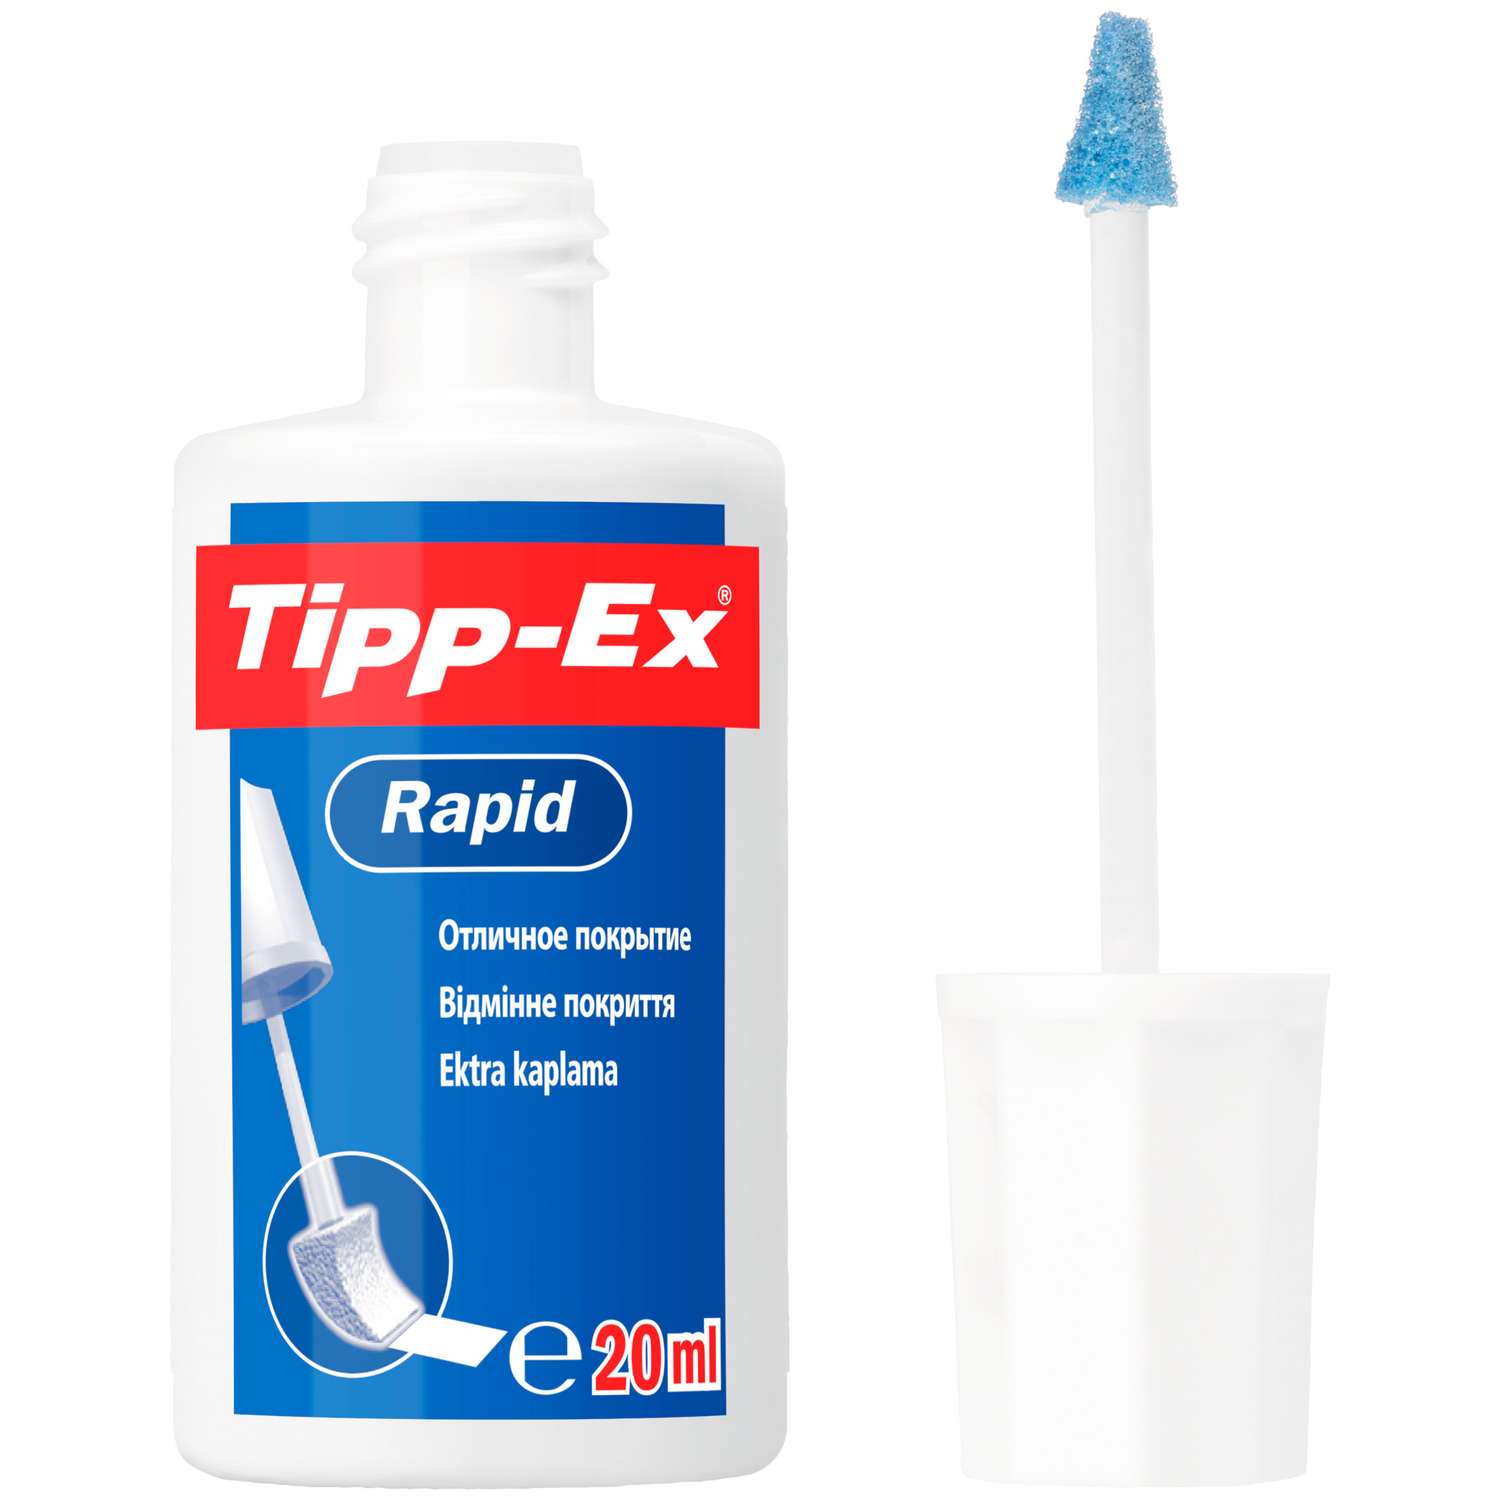 Корректирующая жидкость TIPP-EX Rapid 8871592 - фото 4